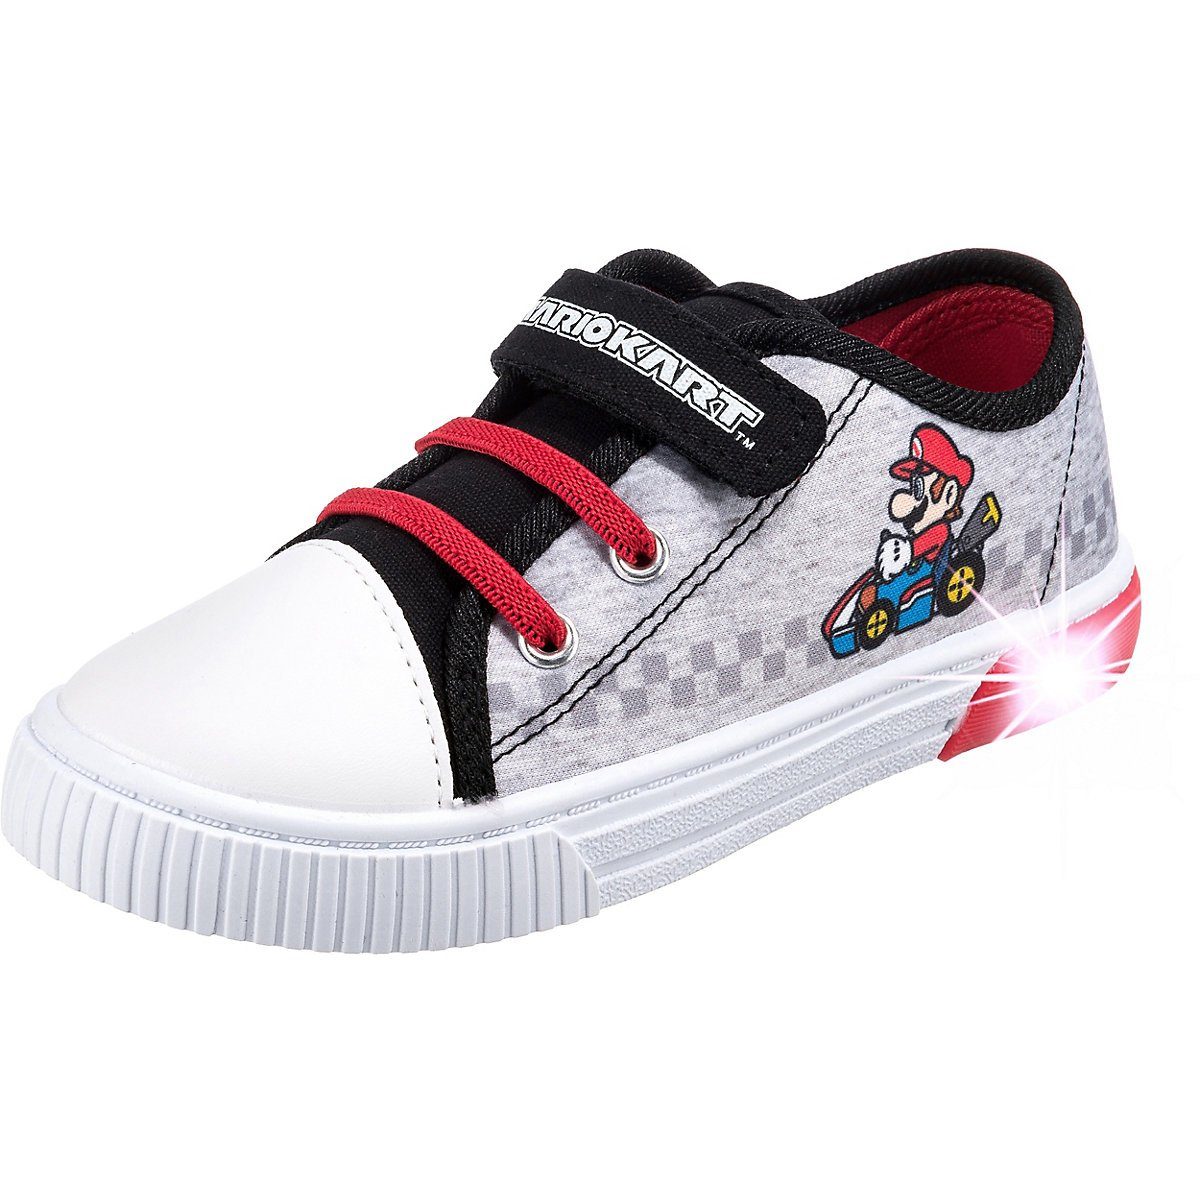 Schuhe Alle Sneaker Super Mario Super Mario Sneakers Low für Jungen Sneaker